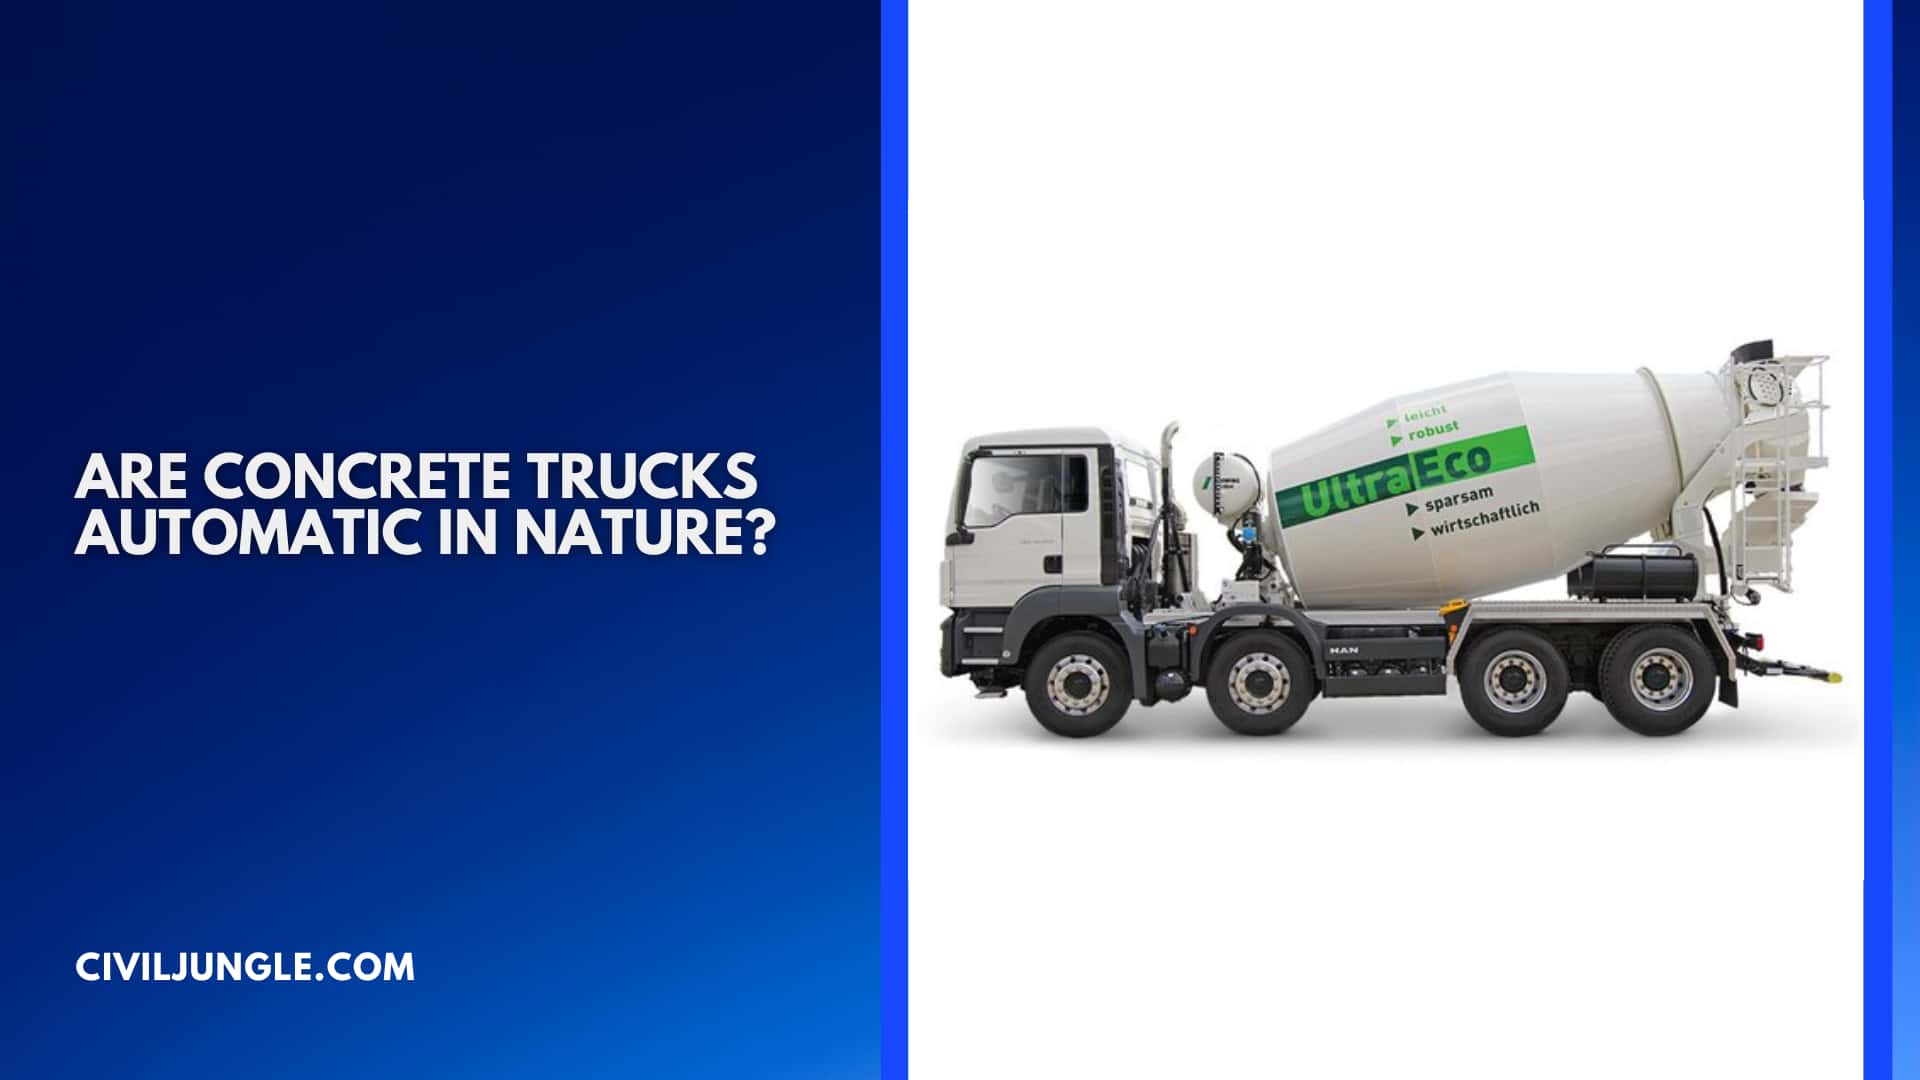 Are Concrete Trucks Automatic in Nature?